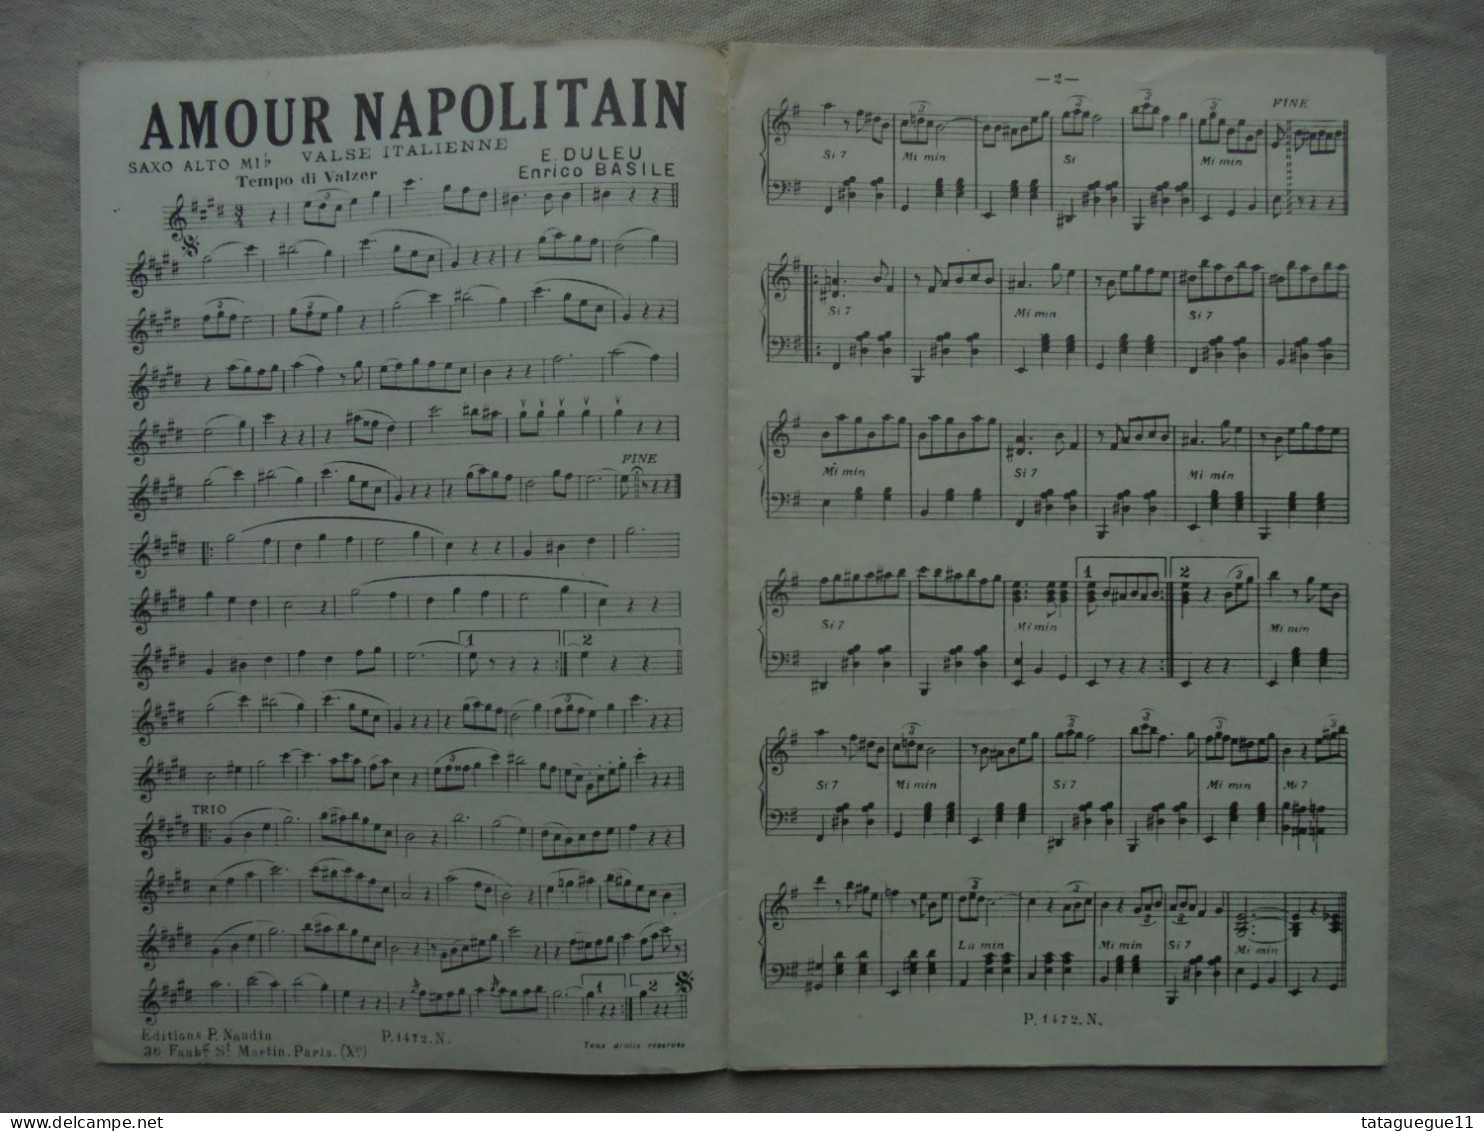 Ancien - Partition Amour Napolitain/Pluie D'étoilles E. Duleu - Song Books